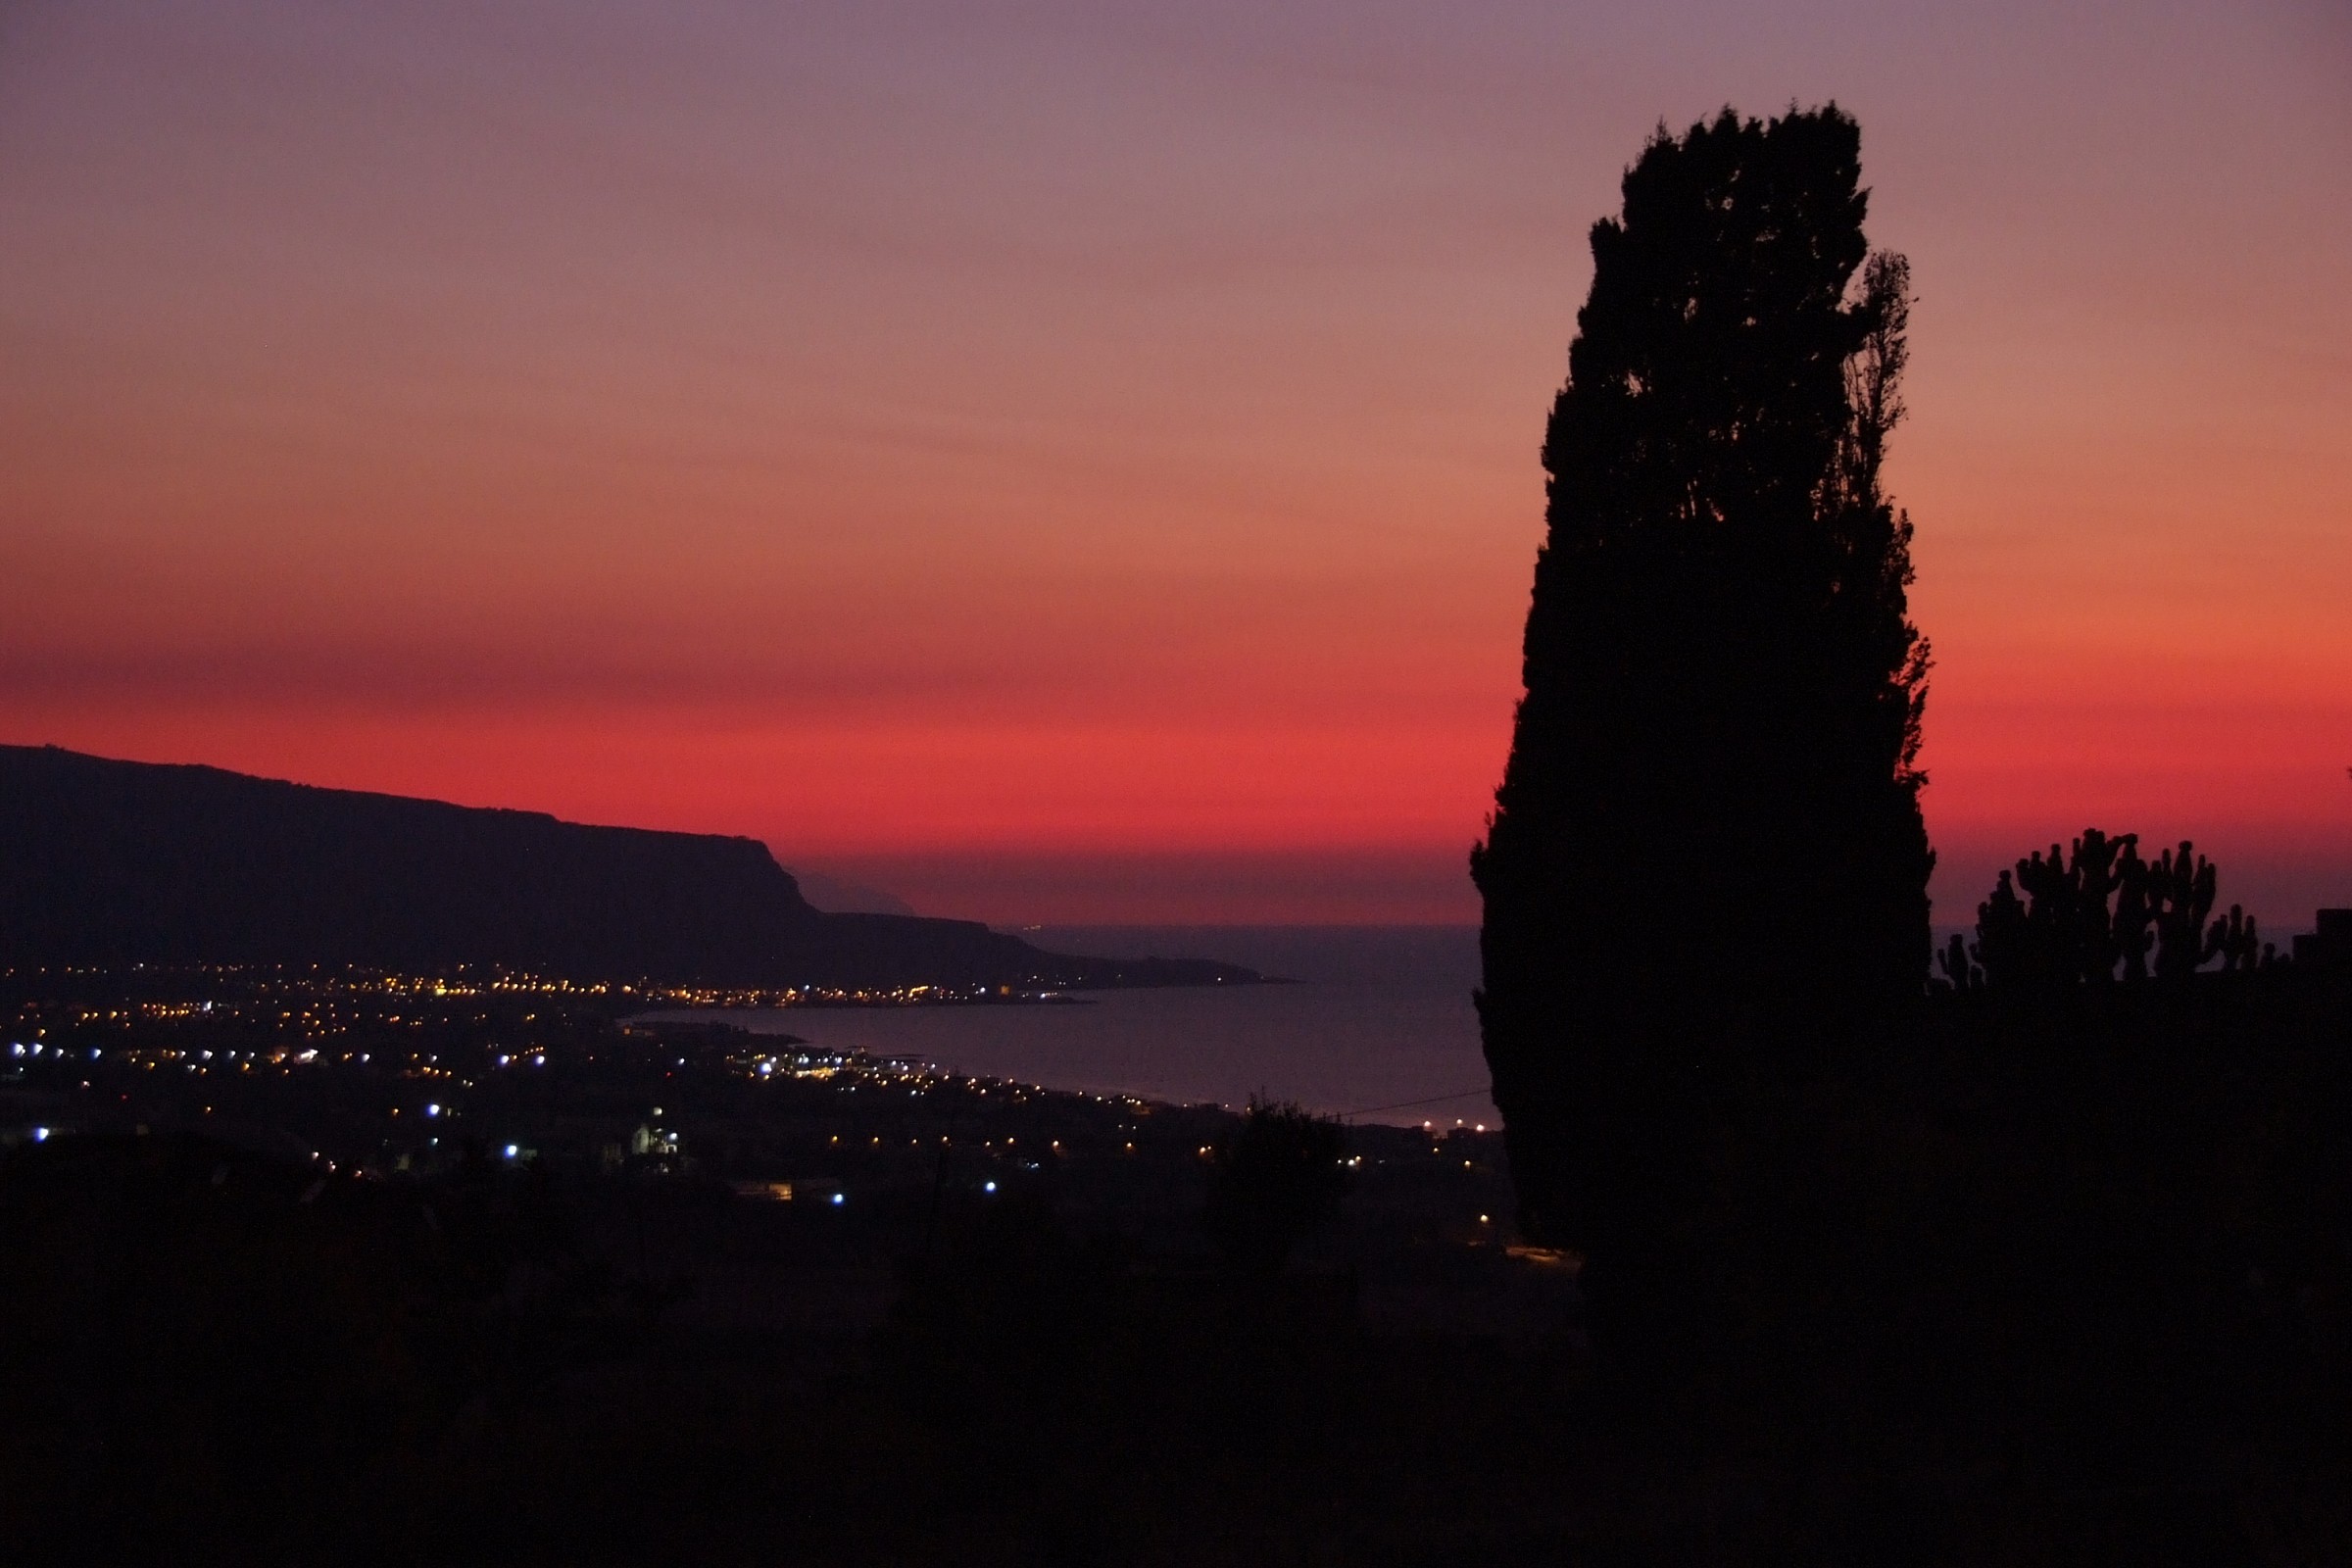 tramonto siciliano...